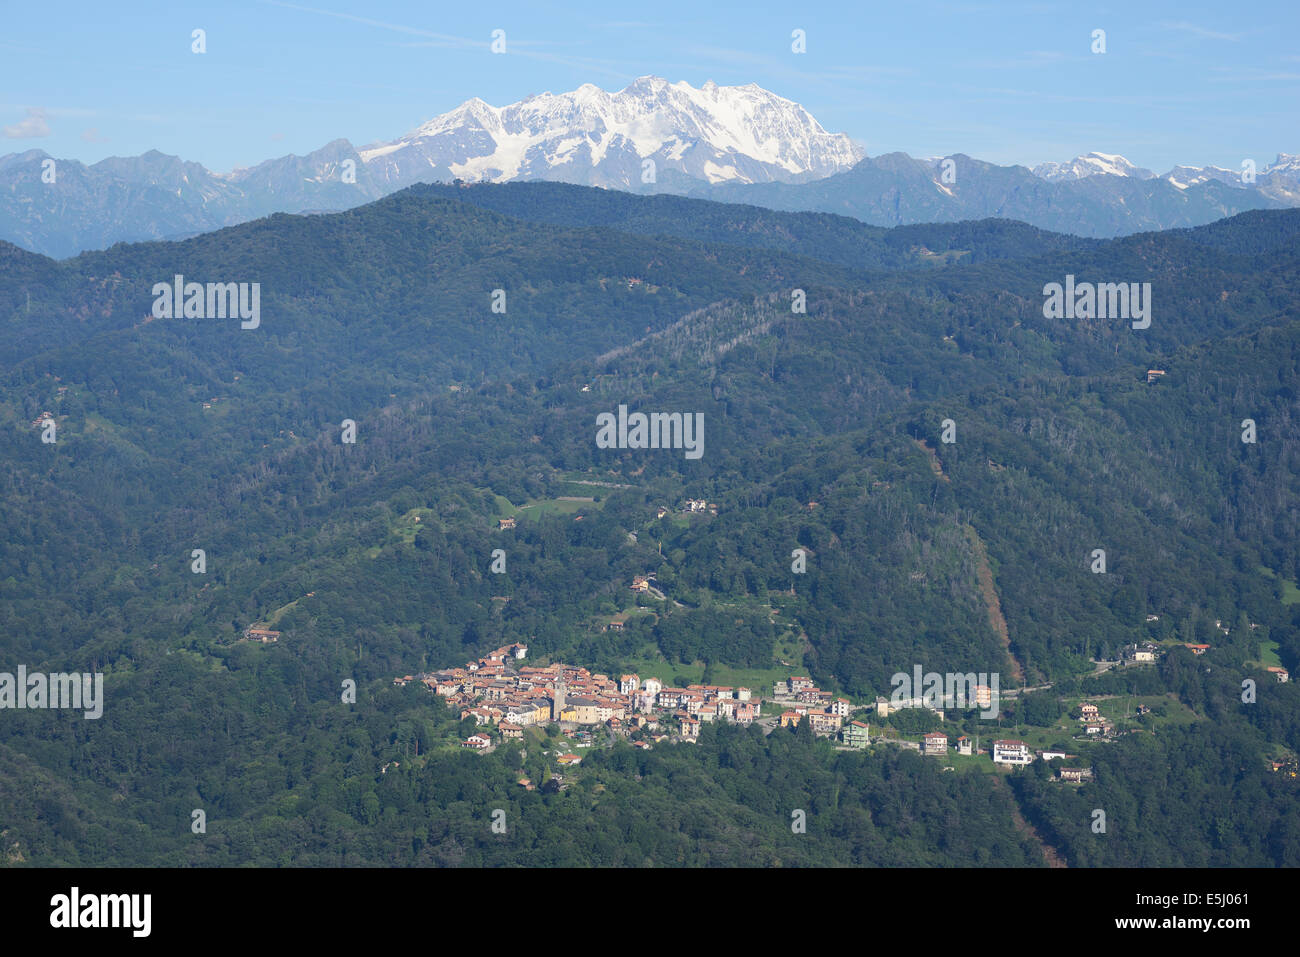 VUE AÉRIENNE.Petit village d'Arola avec Monte Rosa (altitude : 4634 mètres) au loin.Province de Verbano-Cusio-Ossola, Piémont, Italie. Banque D'Images